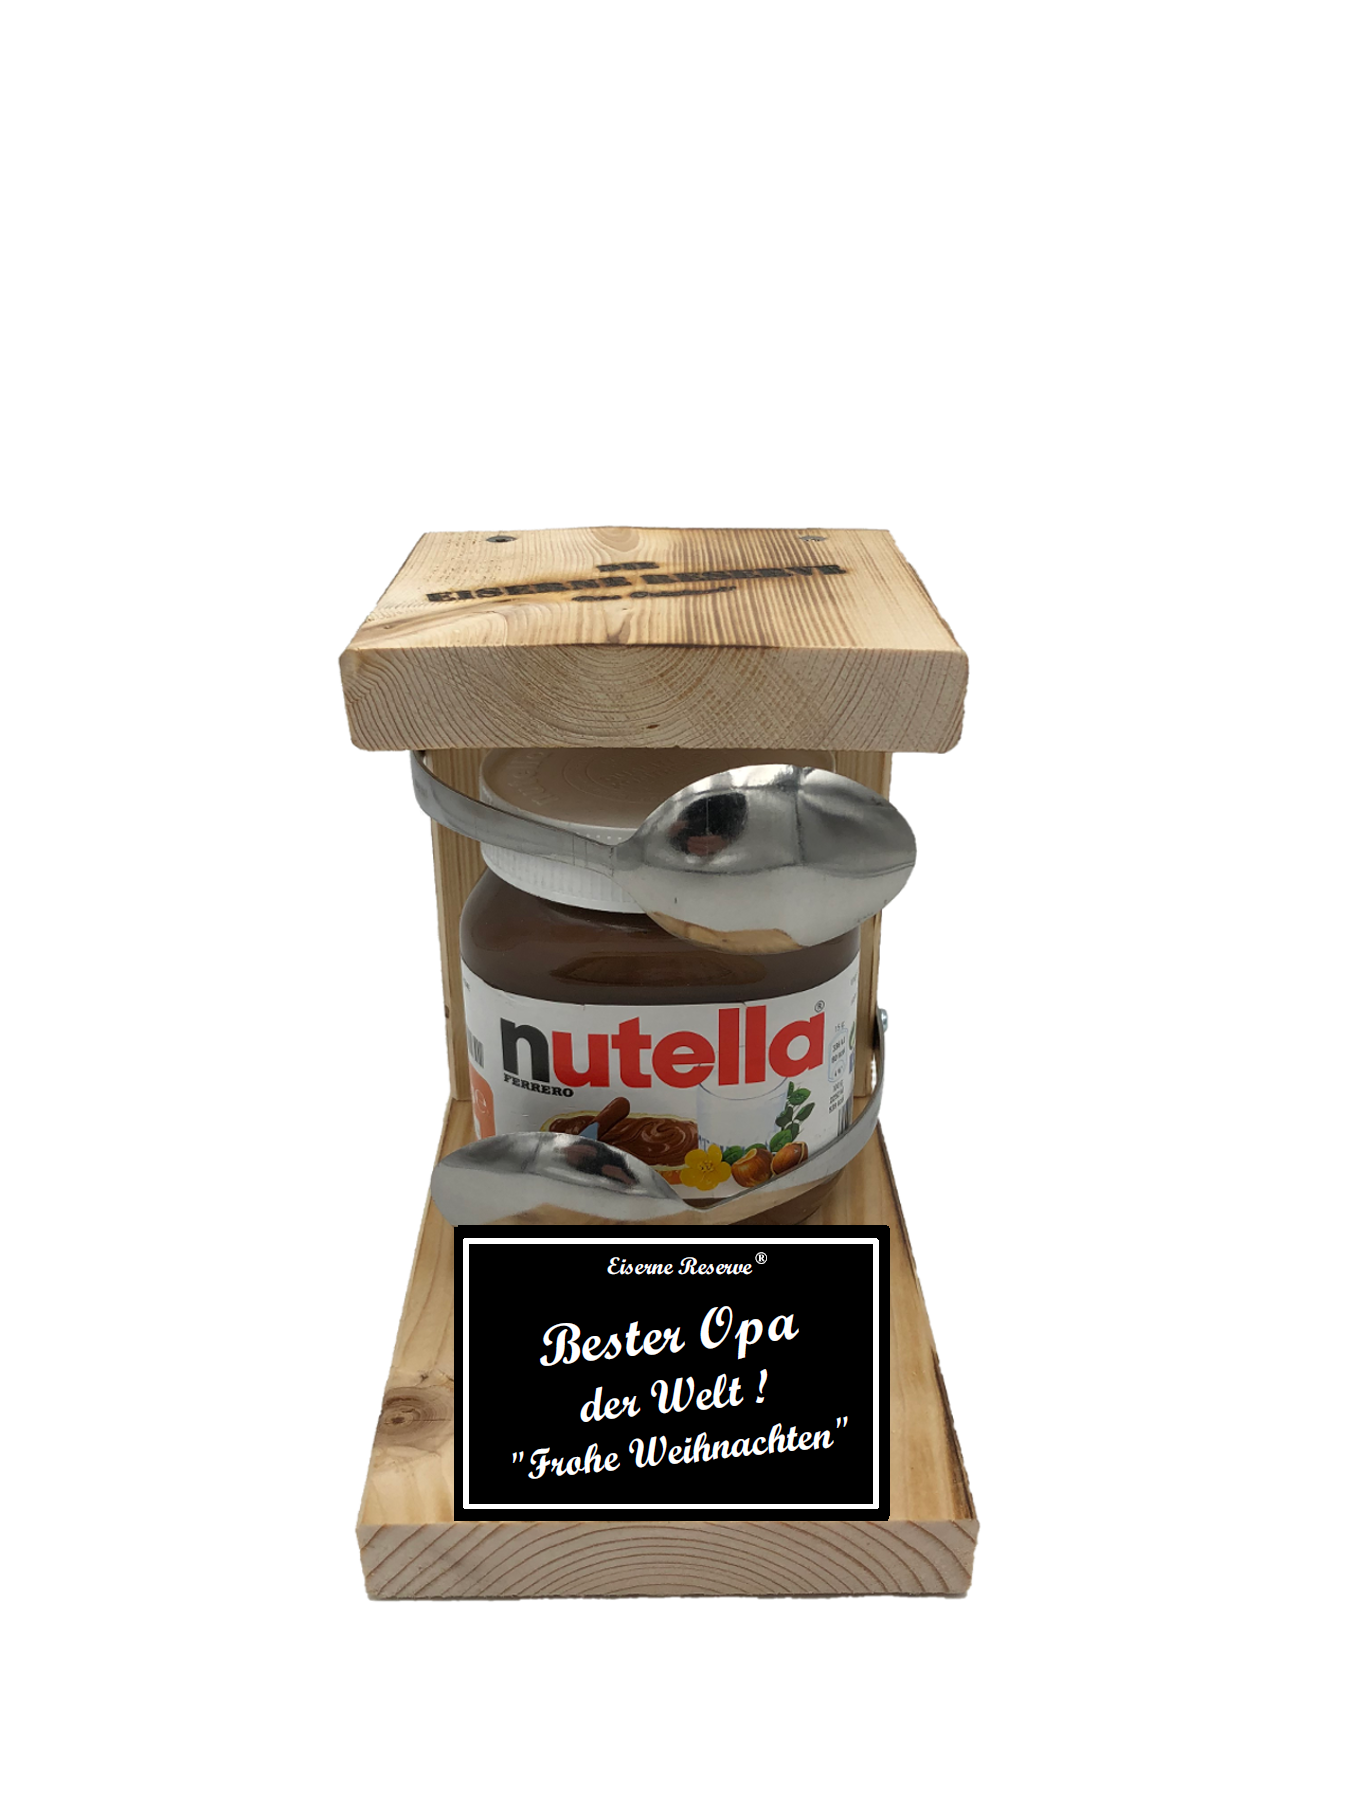 Bester Opa der Welt Frohe Weihnachten Löffel Nutella Geschenk - Die Nutella Geschenkidee